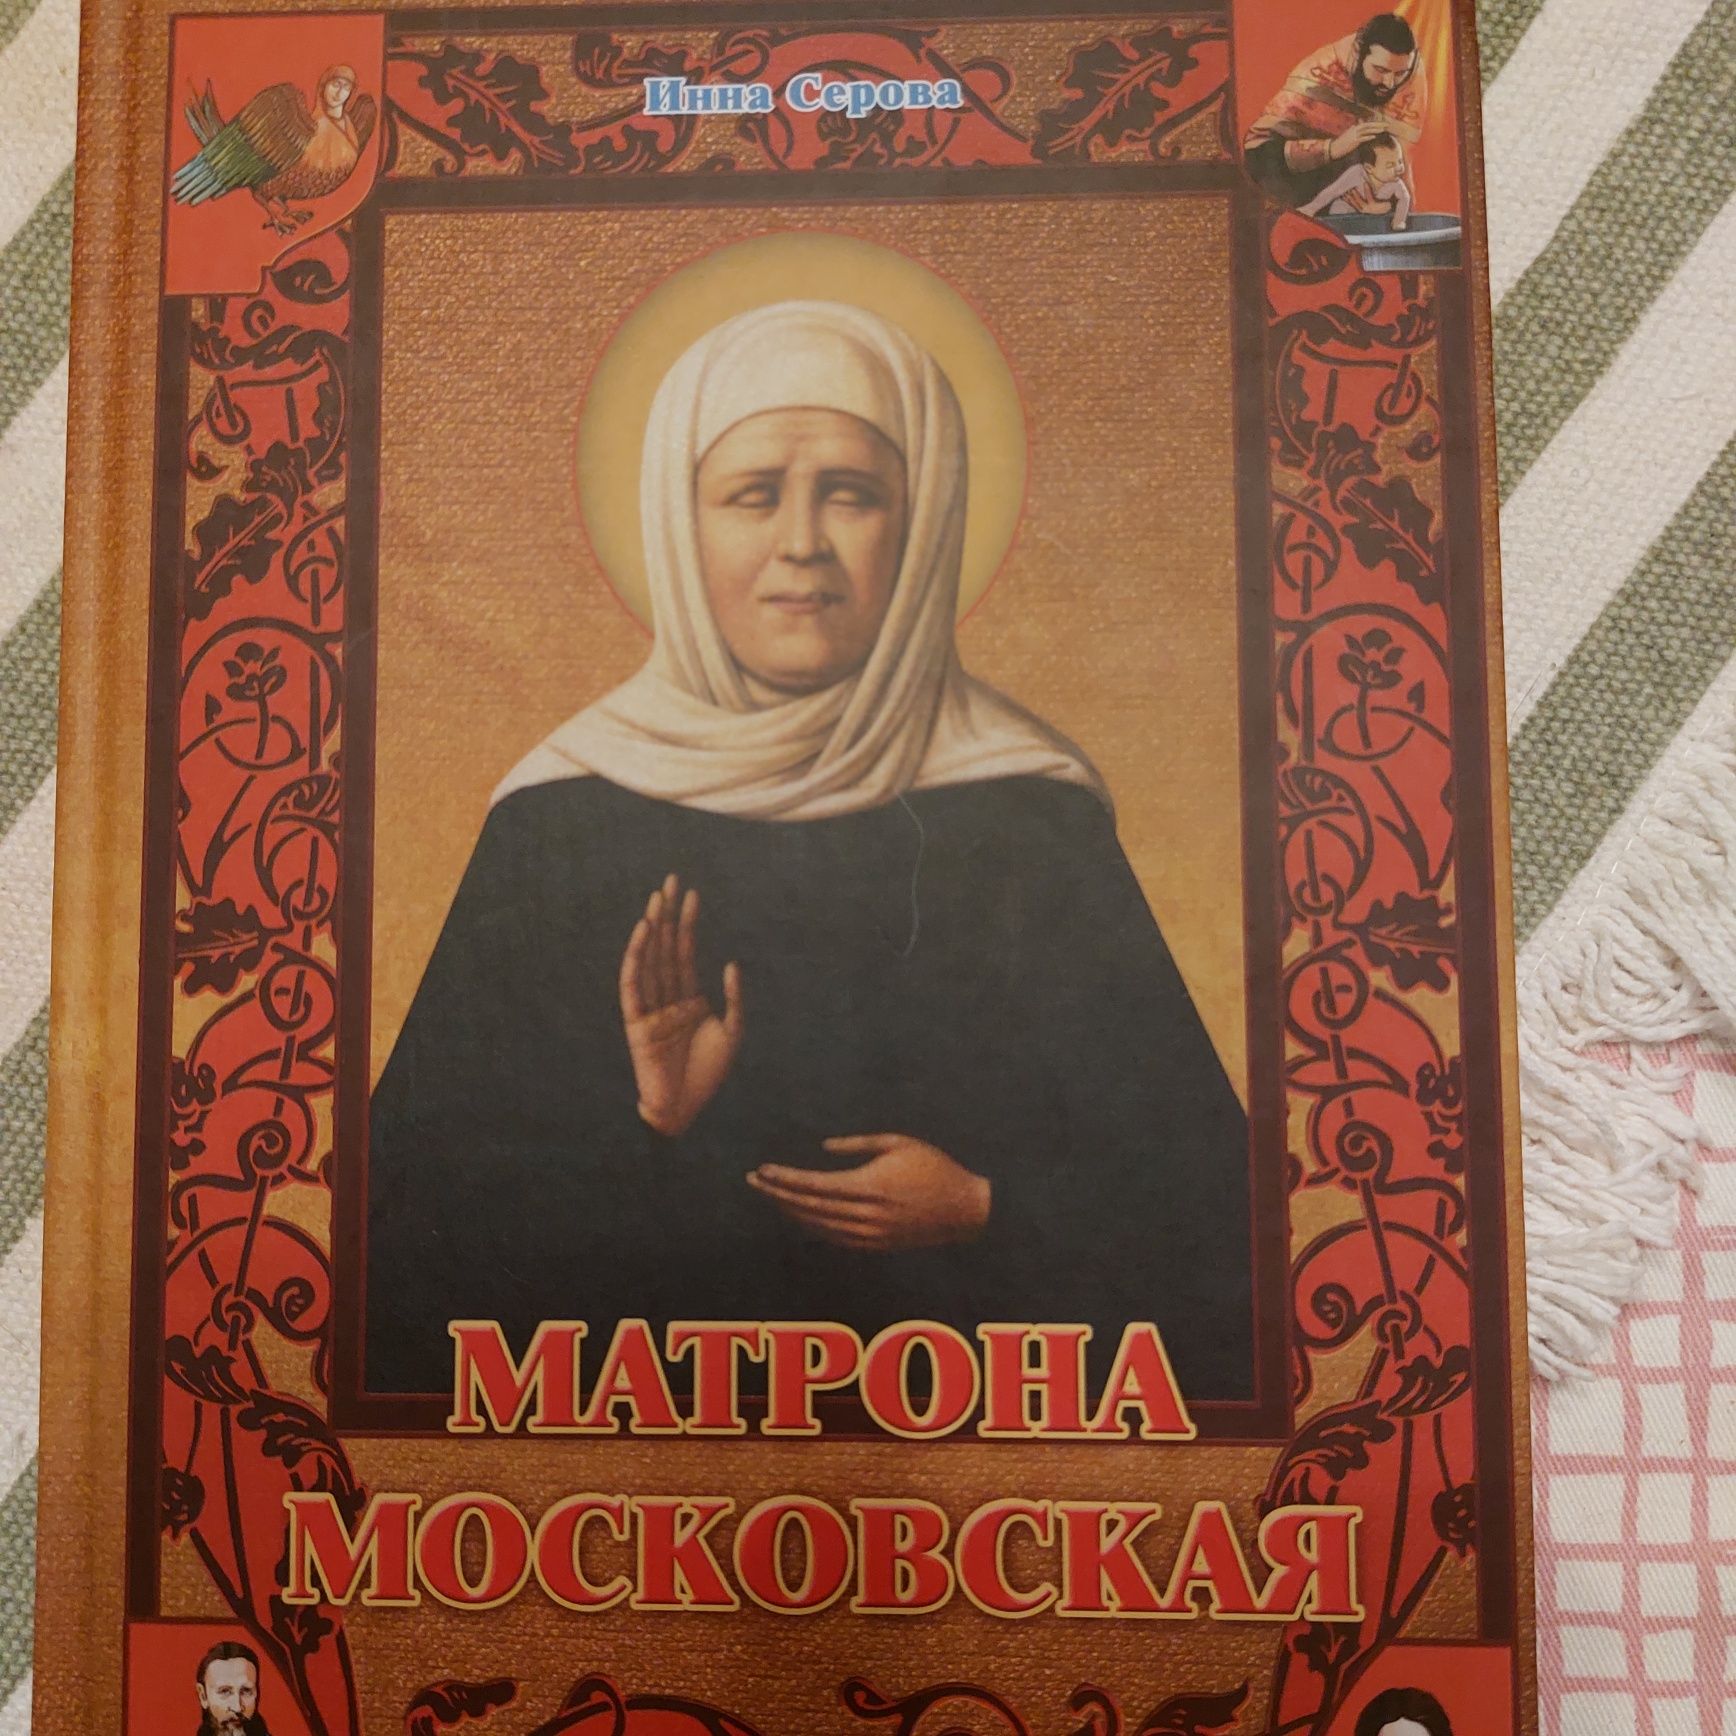 Продам новую книгу. Матрона московская .